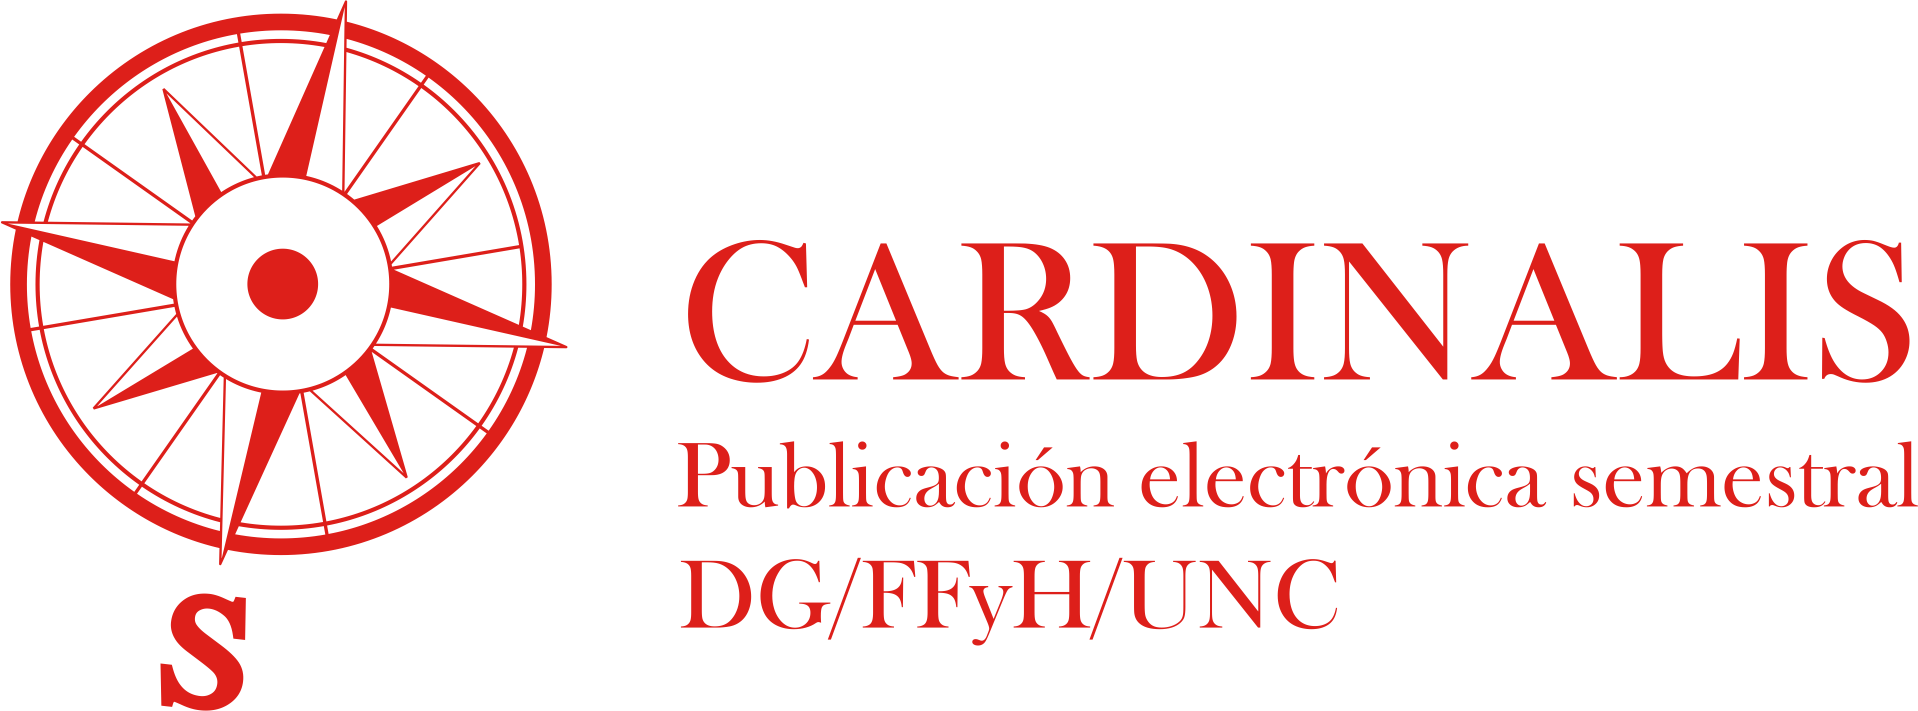 Revista Cardinalis. Departamento de Geografia, Faculdade de Filosofia e Humanidades. Universidade Nacional de Córdoba